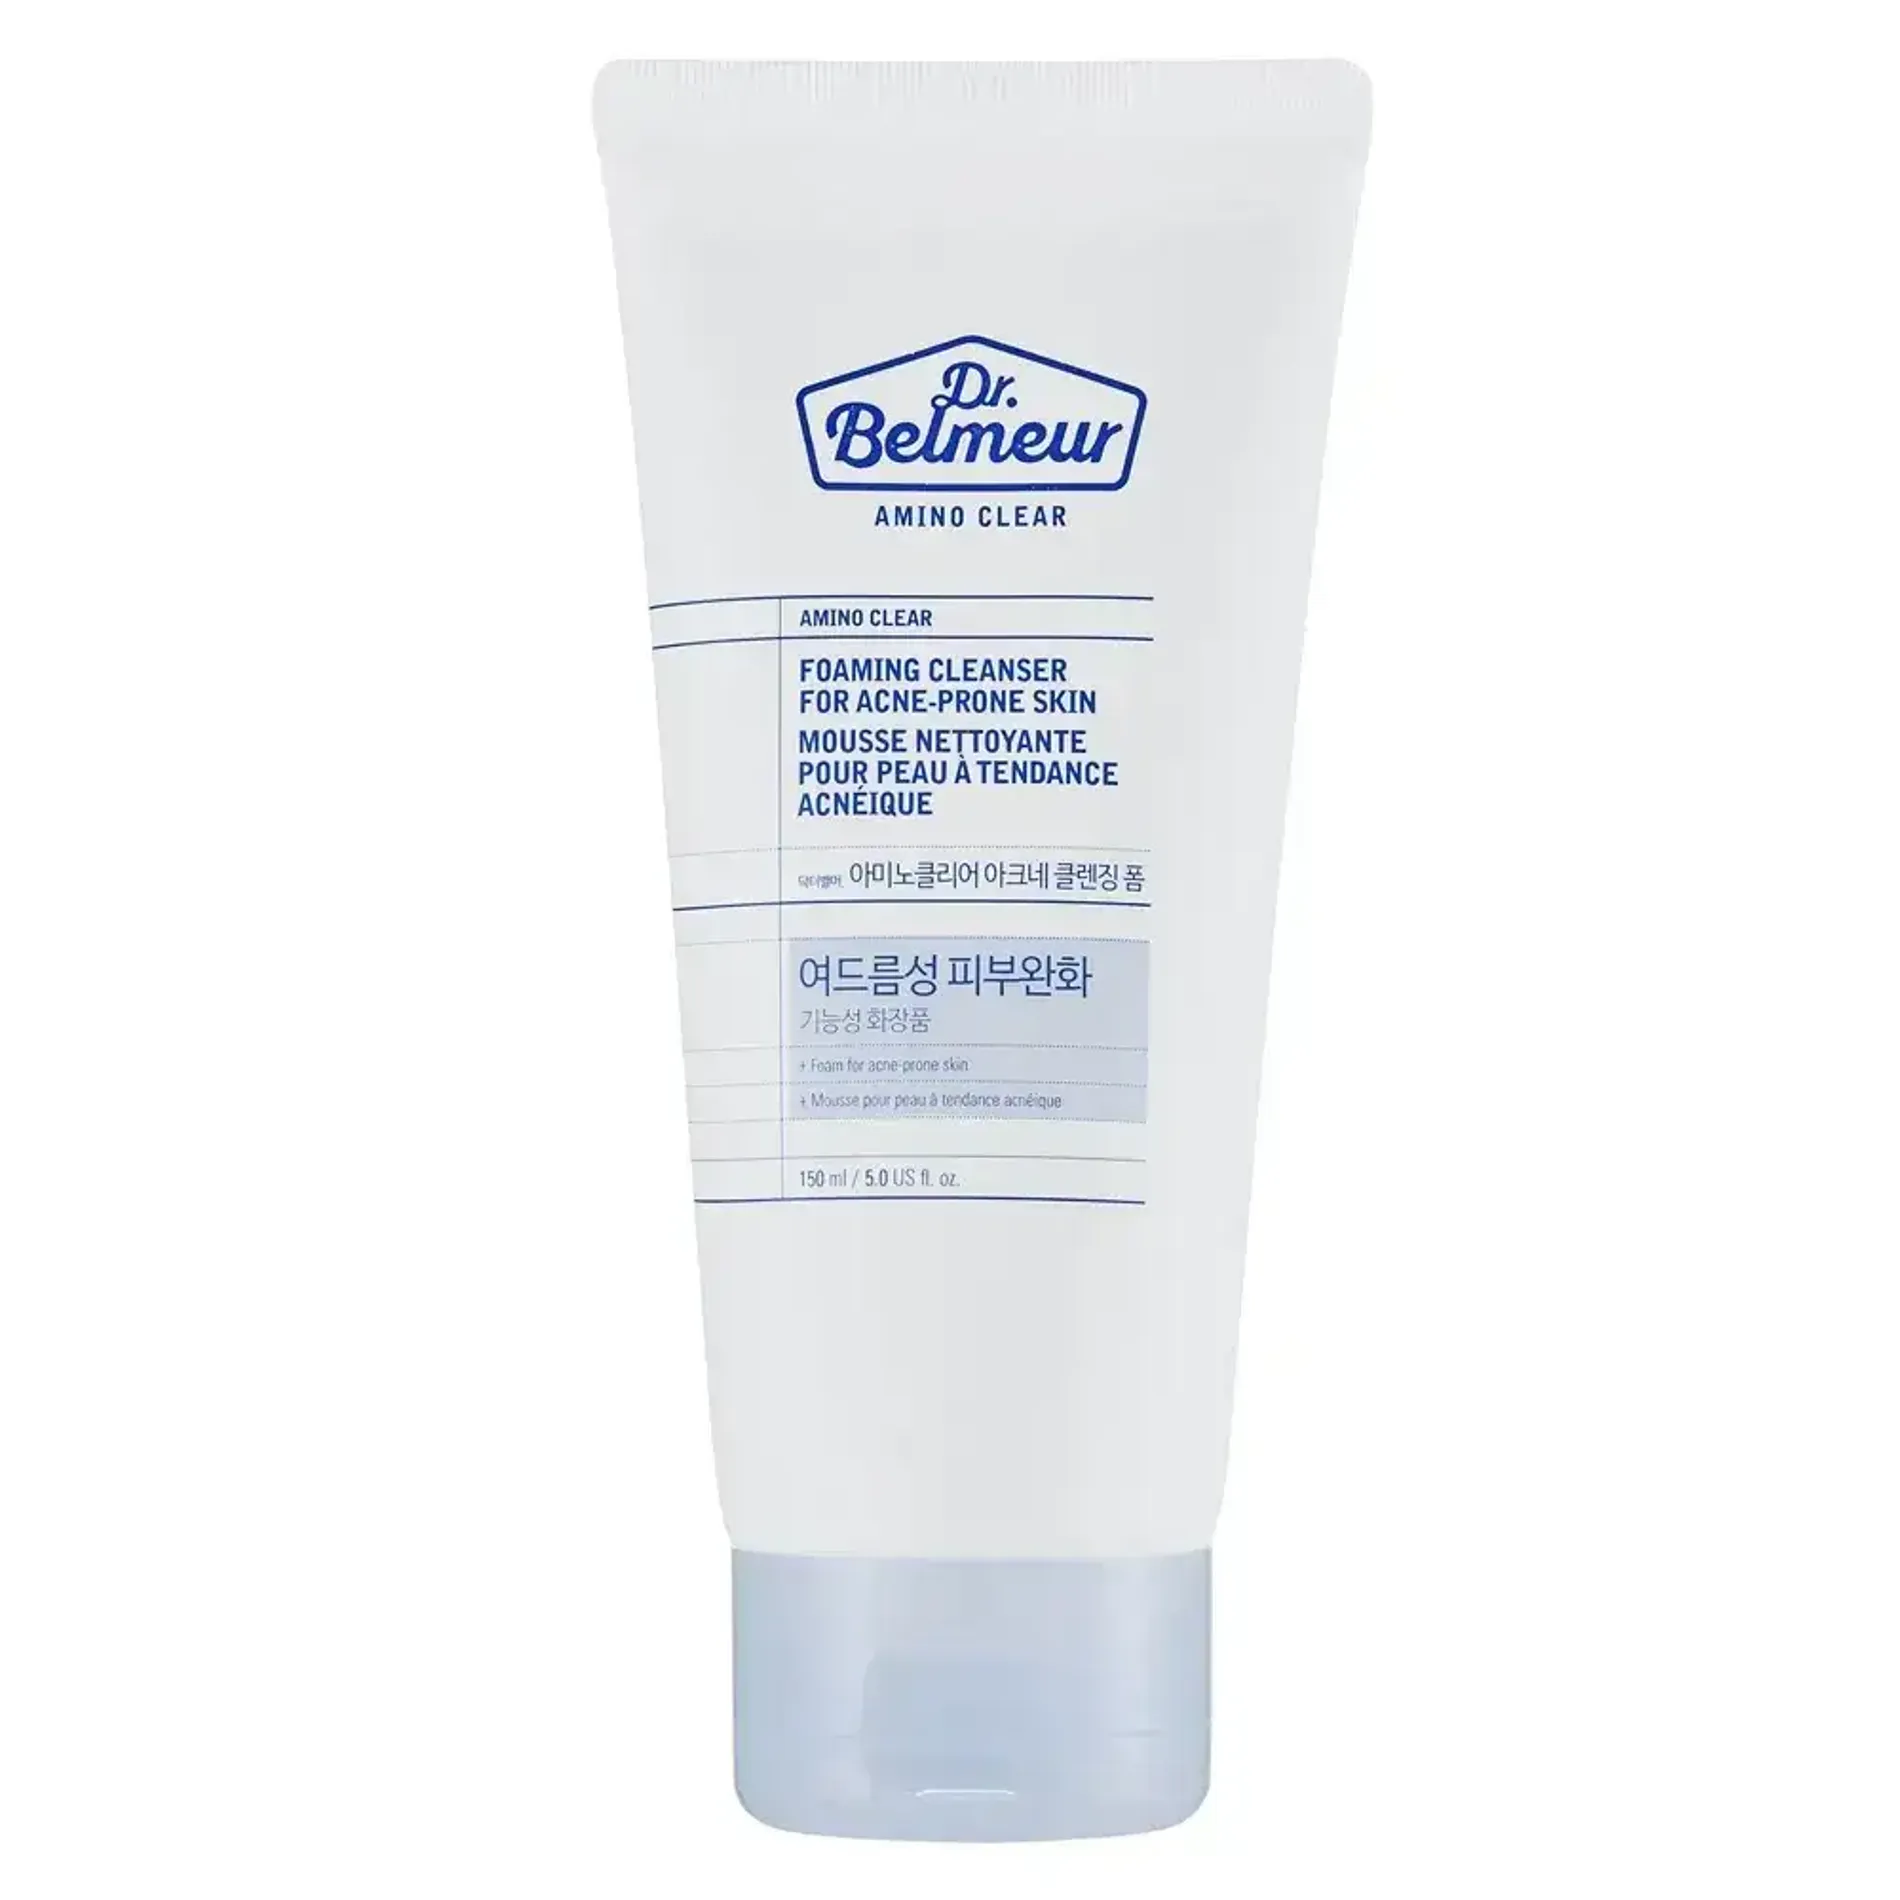 gift-sua-rua-mat-danh-cho-da-mun-dr-belmeur-amino-clear-foaming-cleanser-for-acne-prone-skin-150ml-1